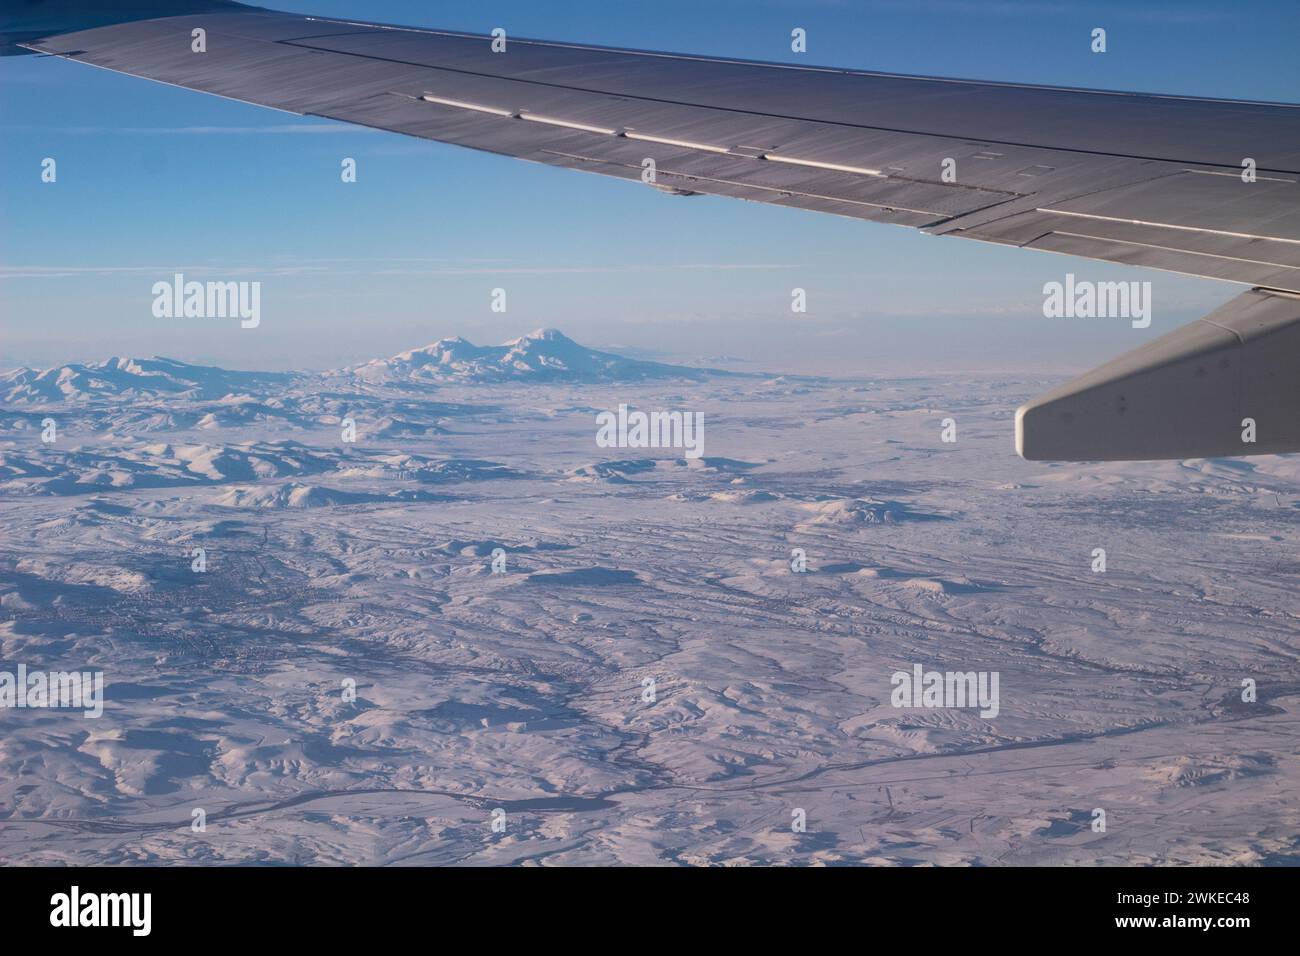 Il cielo con le nuvole e le montagne nella neve. Foto scattata da un aereo. Ala di un aereo nel cielo. Foto Stock